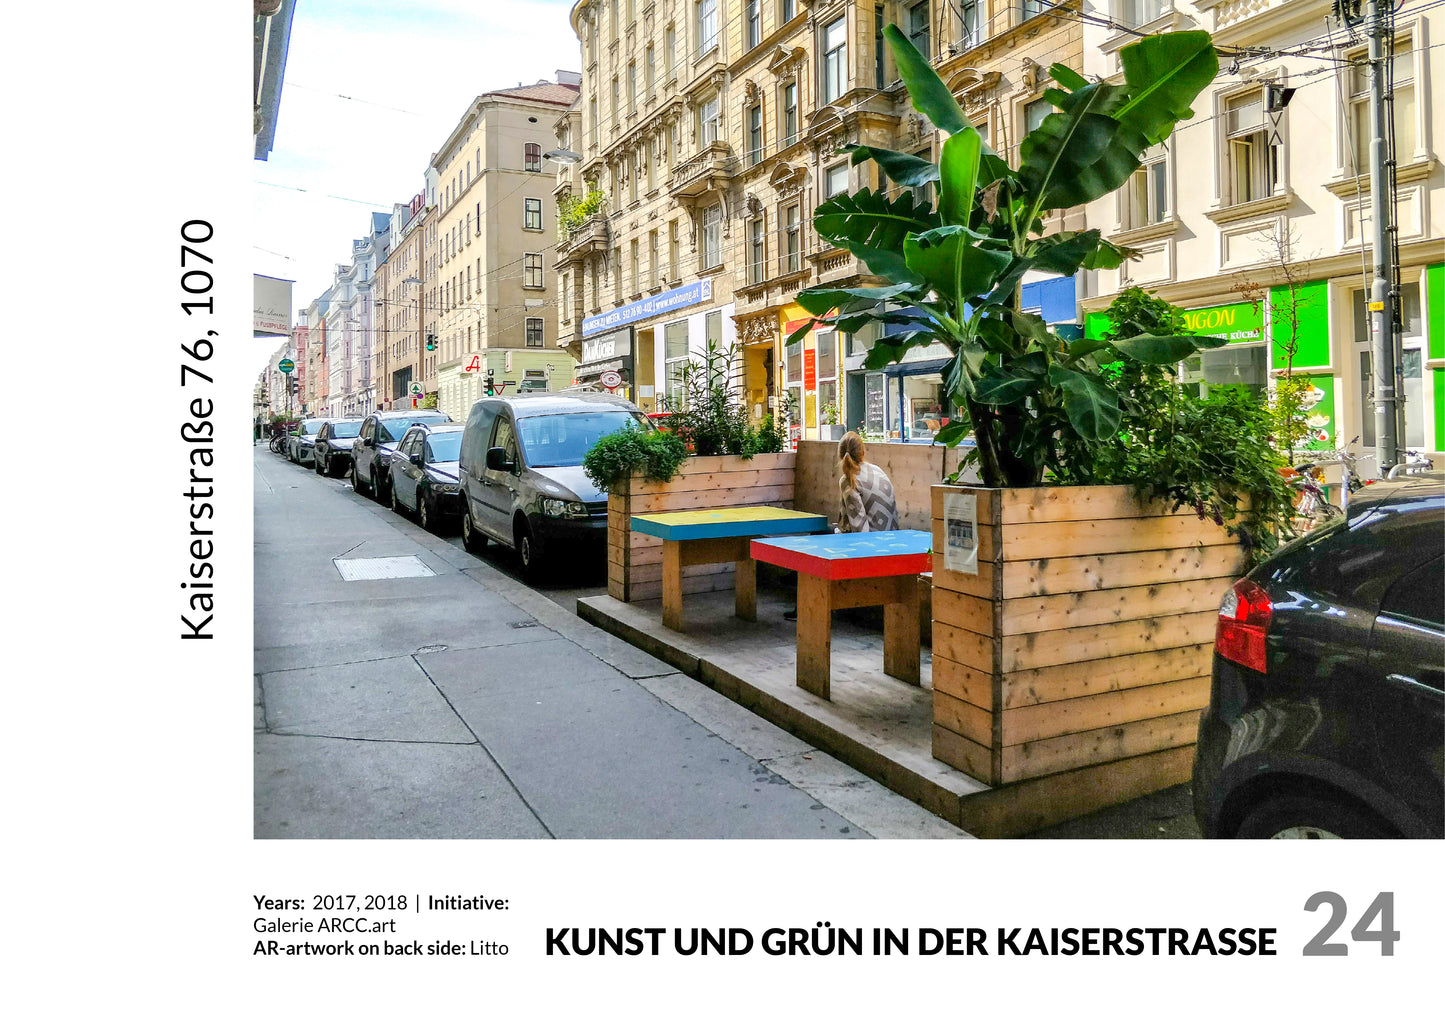 Parklets // Street Furniture Vienna